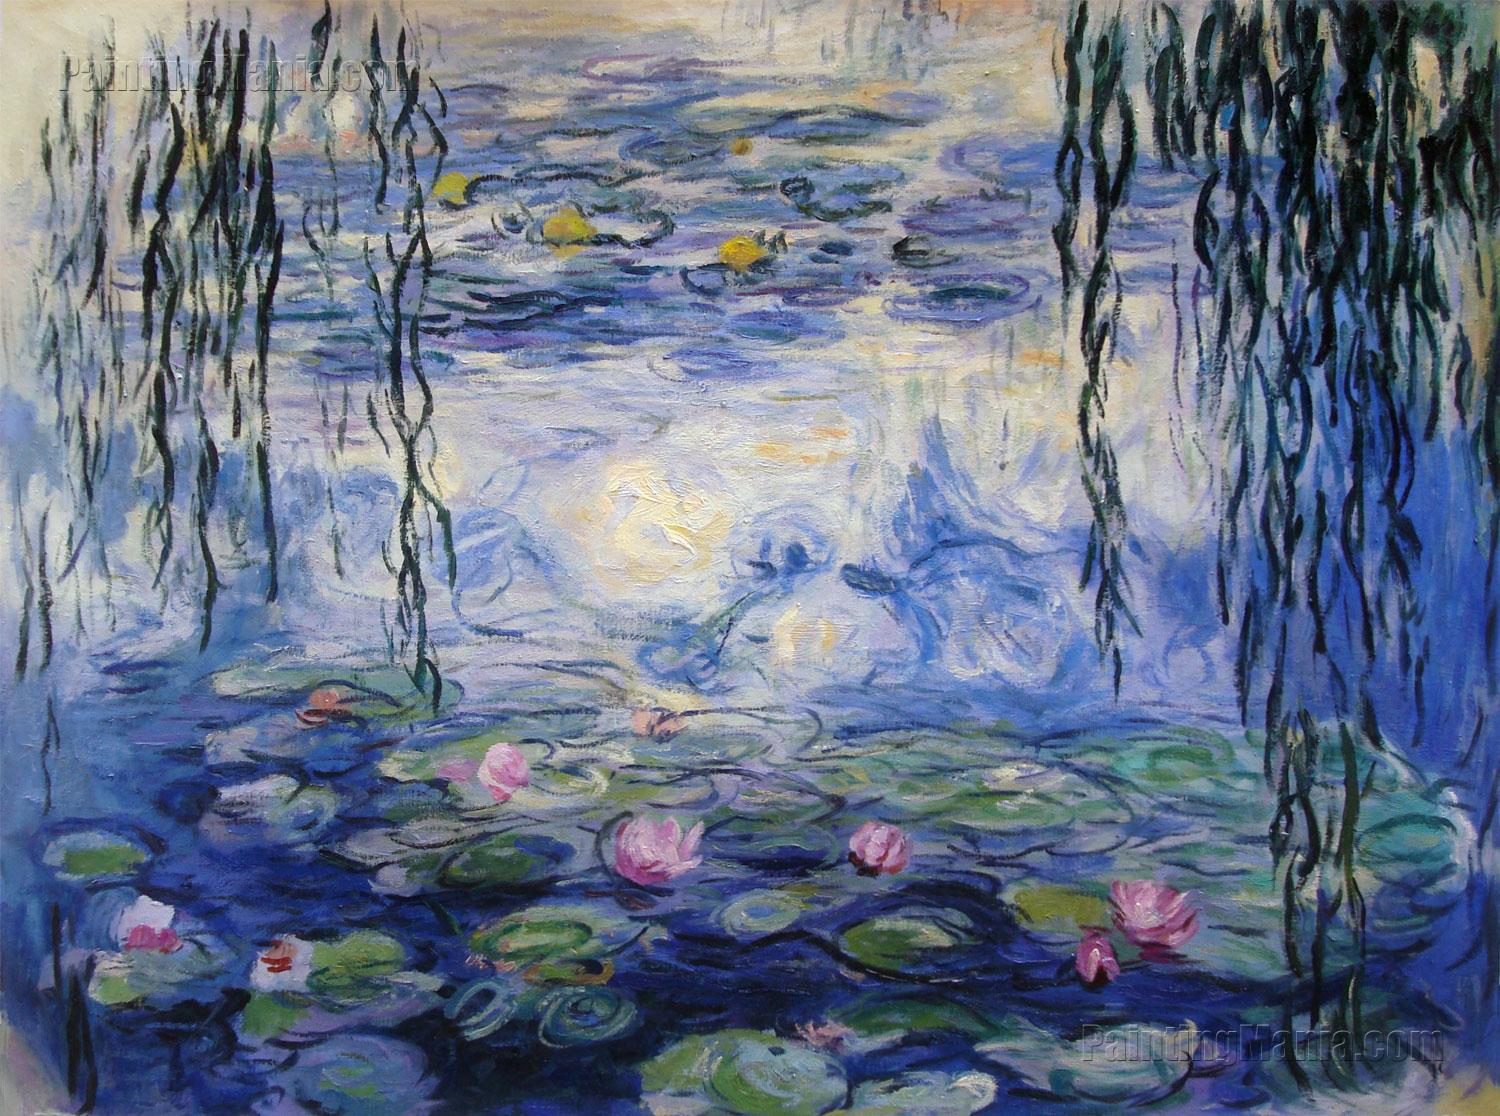 《睡莲》，莫奈，1916。据说，莫奈晚年画作大量使用蓝色、紫色，可能是因为患有白内障，觉得画面中蓝色、紫色不足，大量填补造成的。图片来自claude-monet.com。